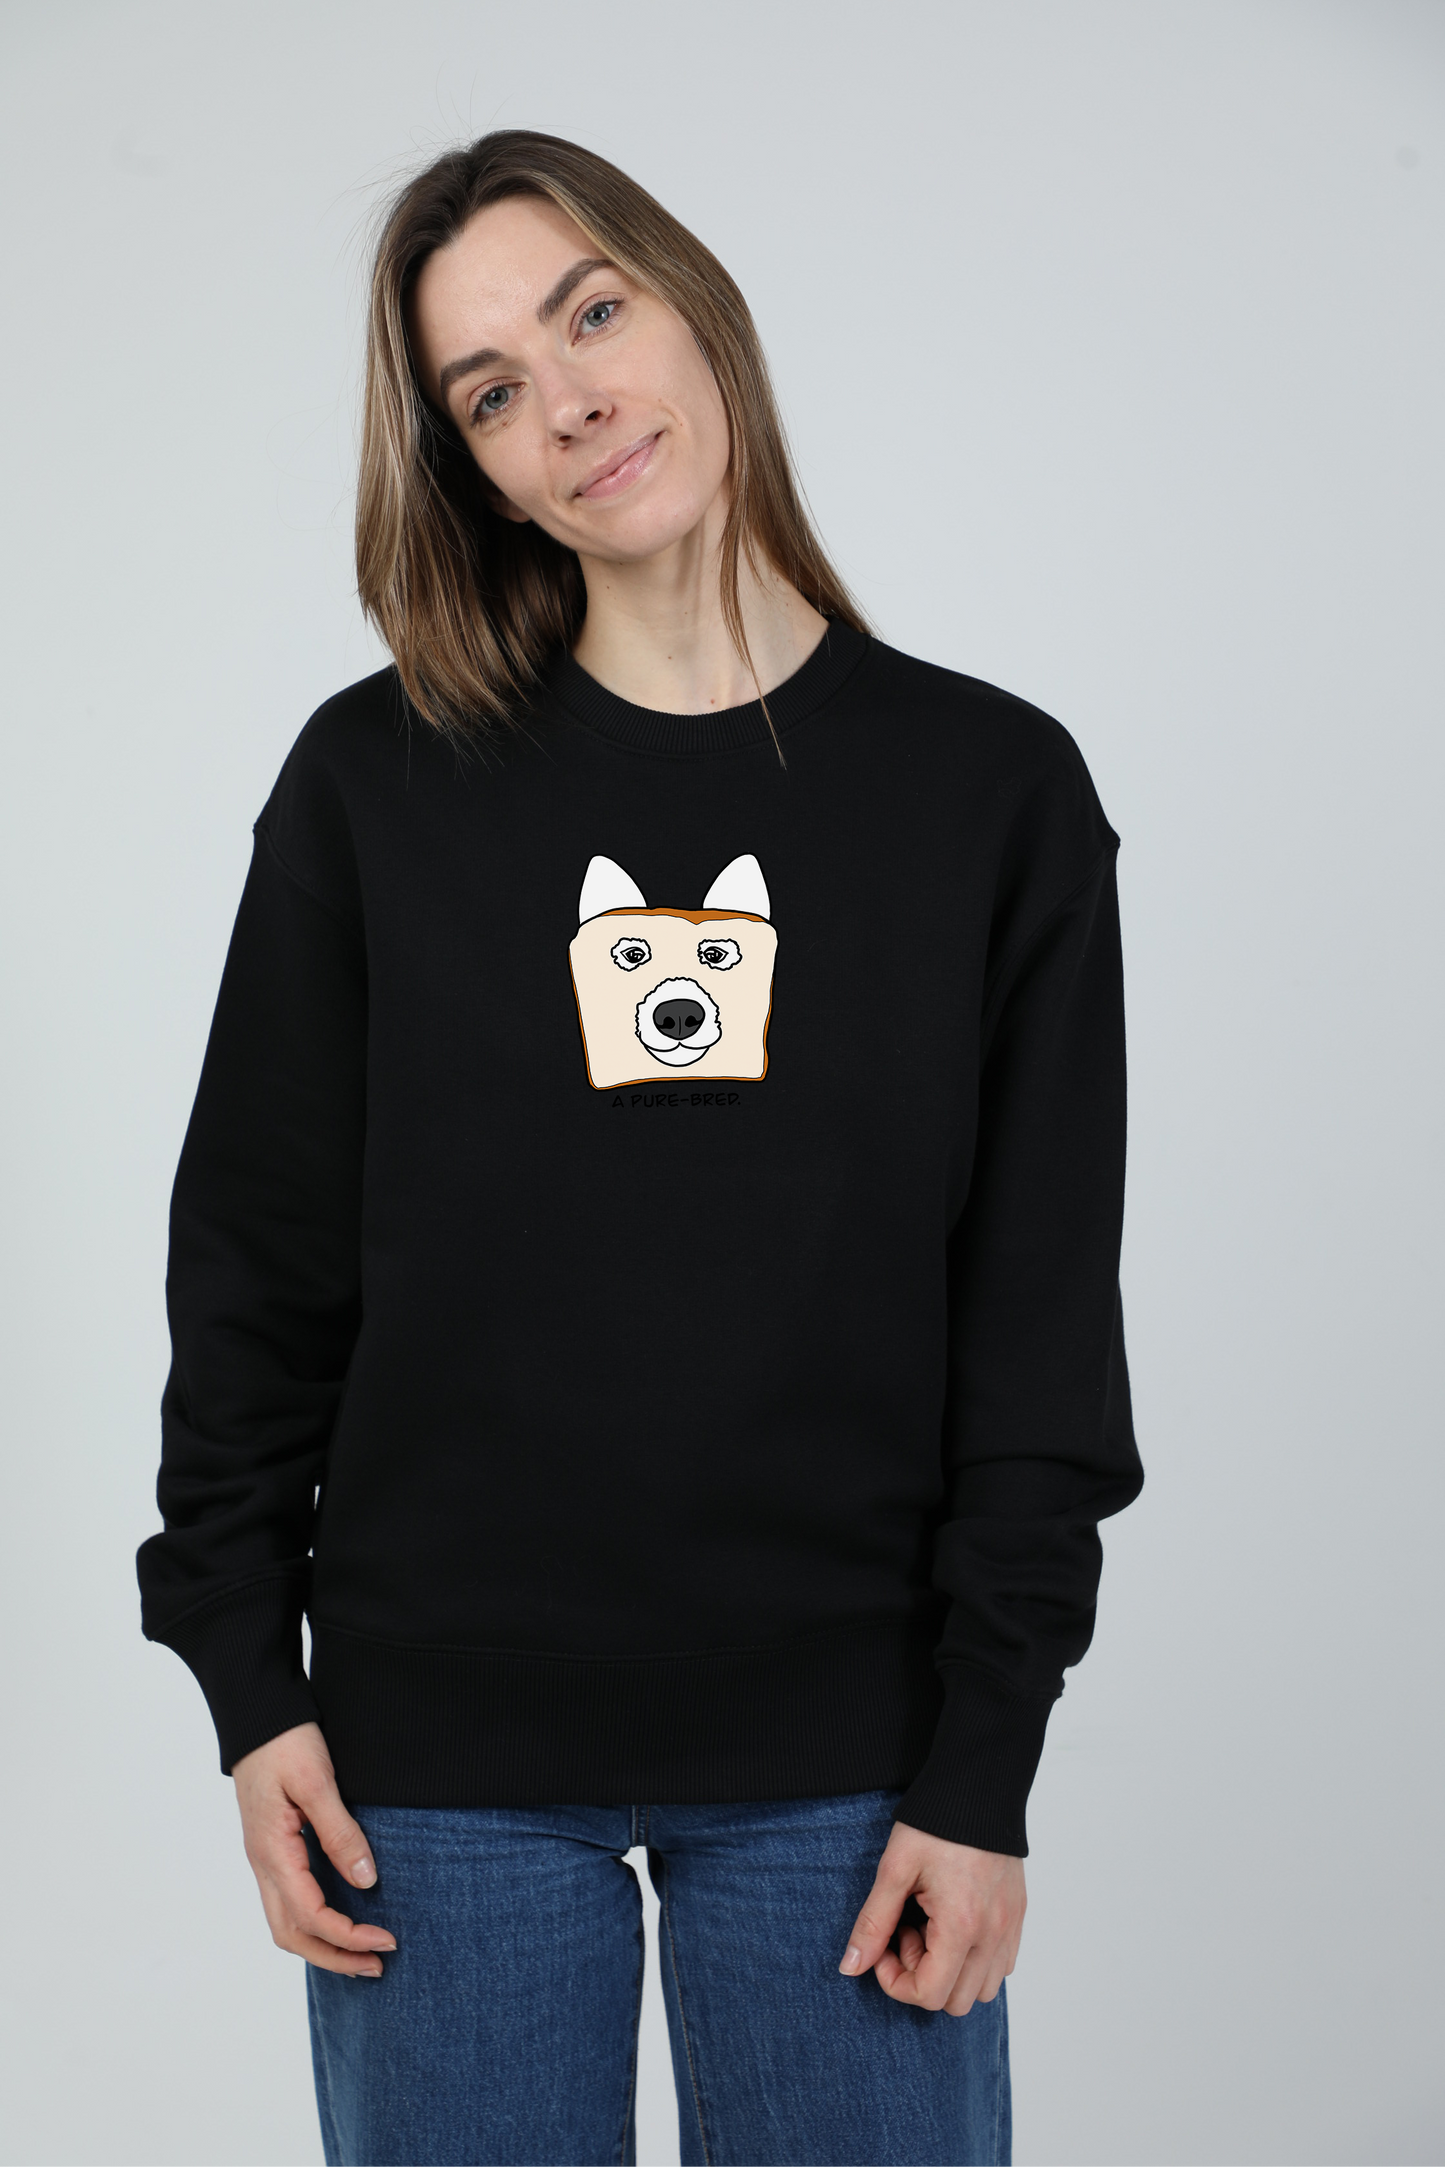 Pure-bred dog | Crew neck sweatshirt with dog. Oversize fit | Unisex